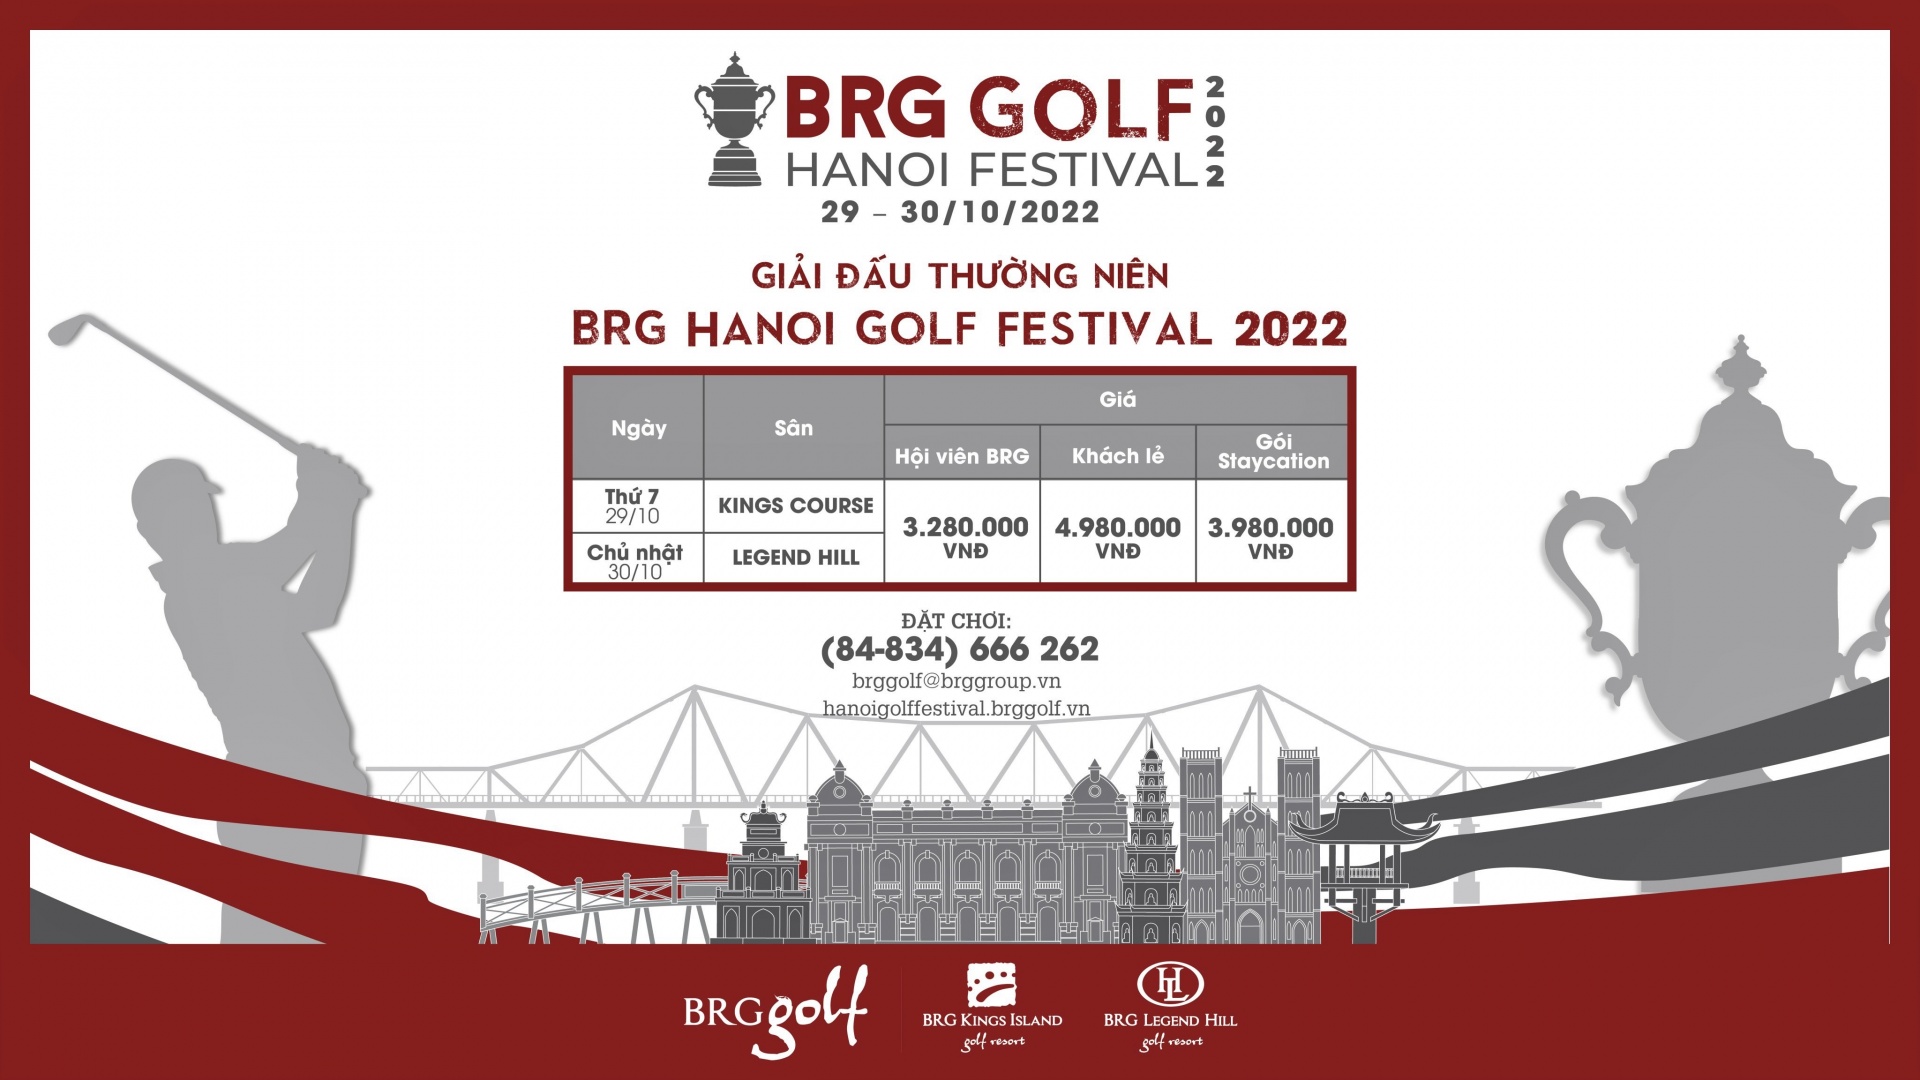 2022 BRG Golf Hanoi Festival is on horizon